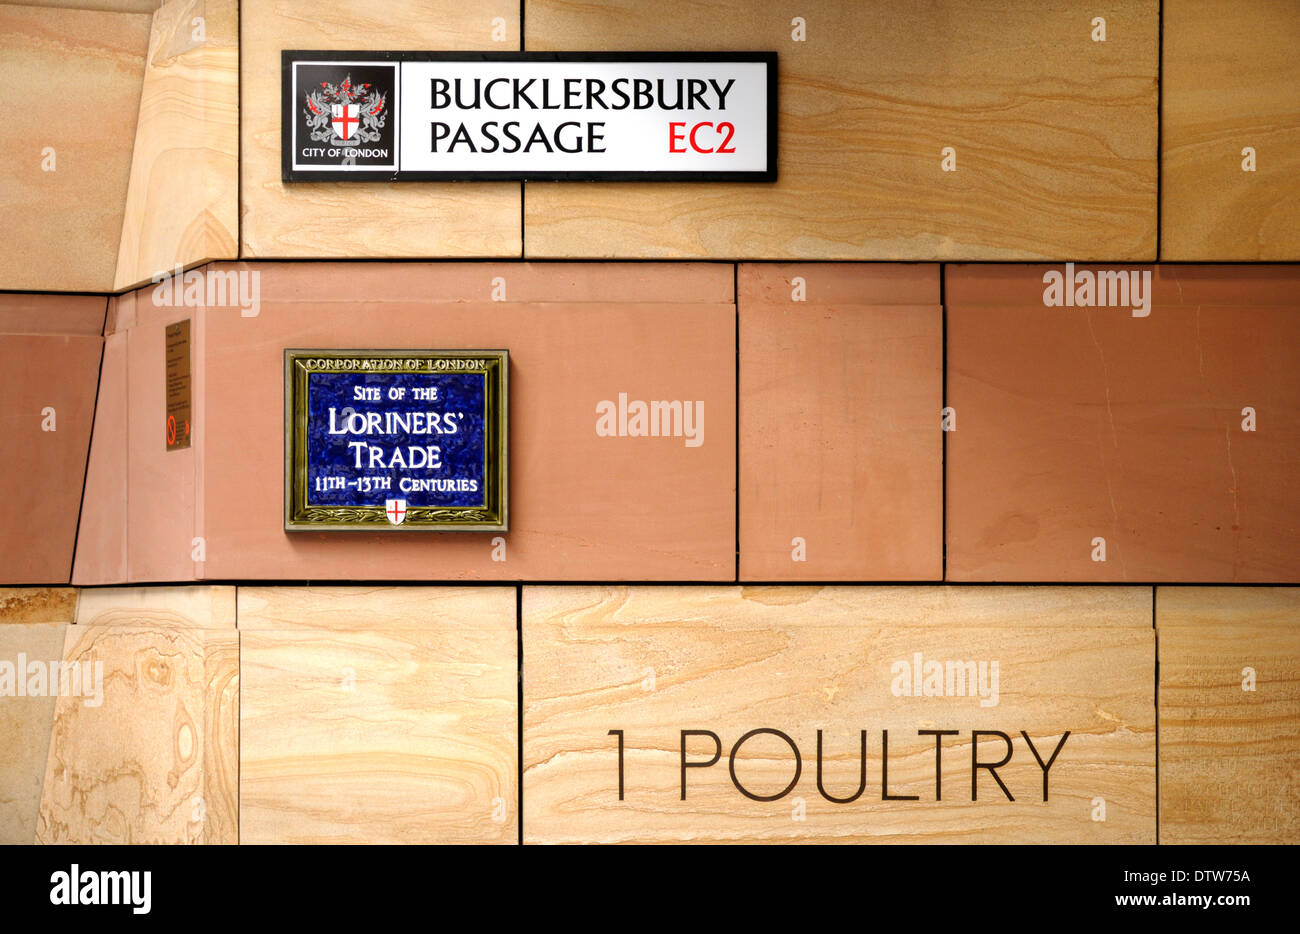 Londres, Inglaterra, Reino Unido. Paso Bucklersbury / 1 aves de corral (calle). Sitio del comercio Loriners' (11ª-13ª siglos) Foto de stock